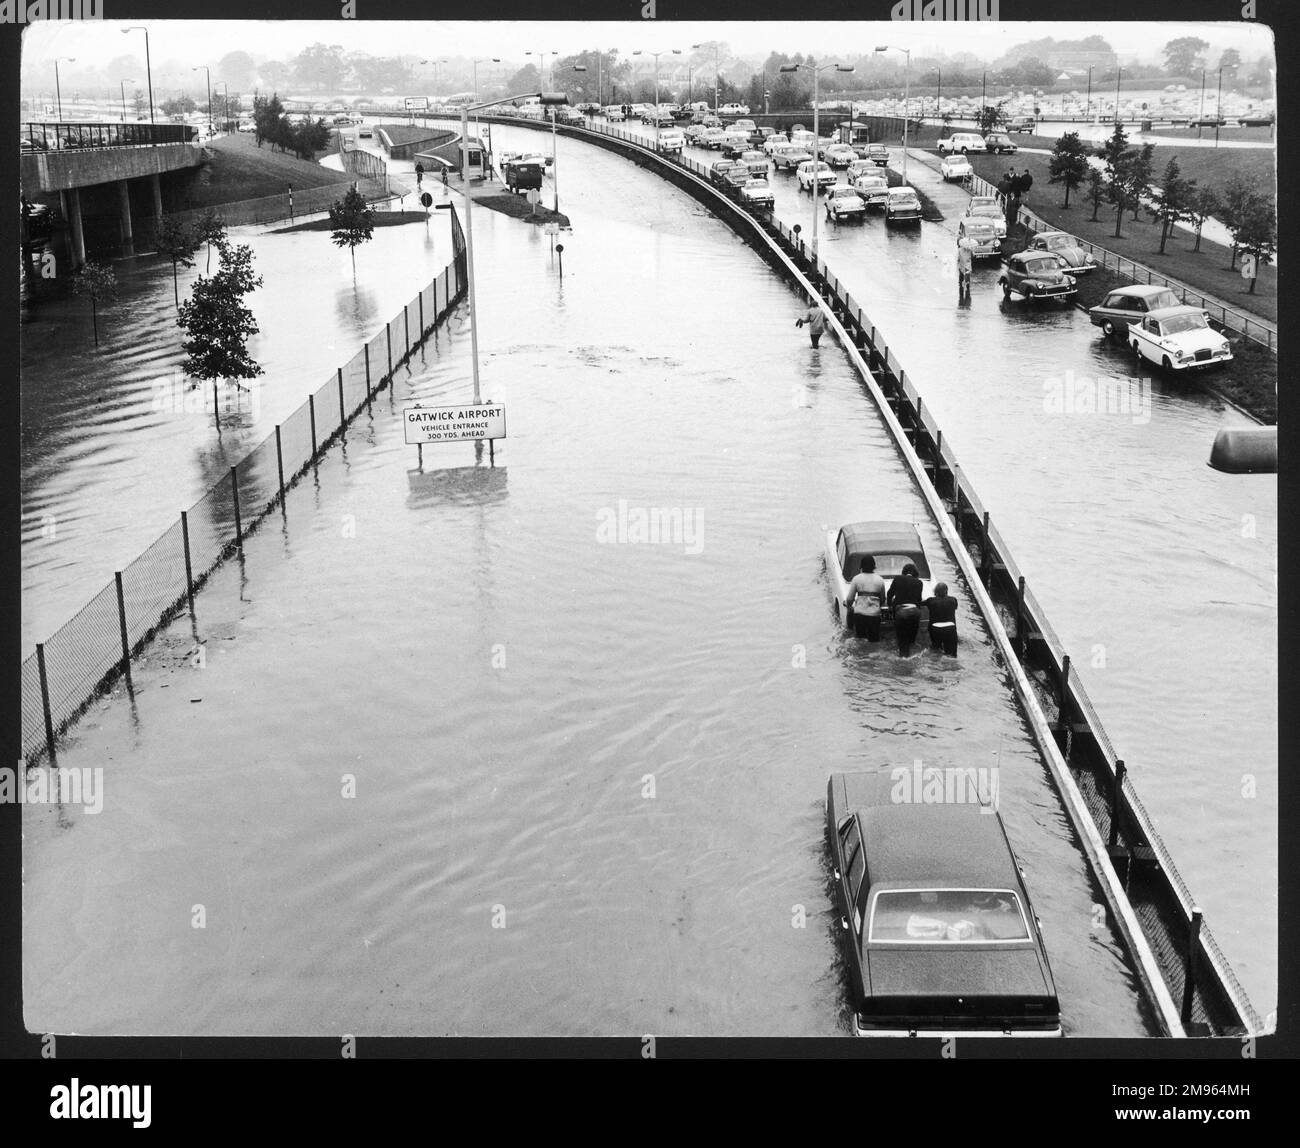 Una scena incredibile, come qualcosa di un film di disastro, come la gente svanisce attraverso le inondazioni, spingendo le loro auto lungo la strada A23 fuori dall'aeroporto di Gatwick, Inghilterra. Foto Stock